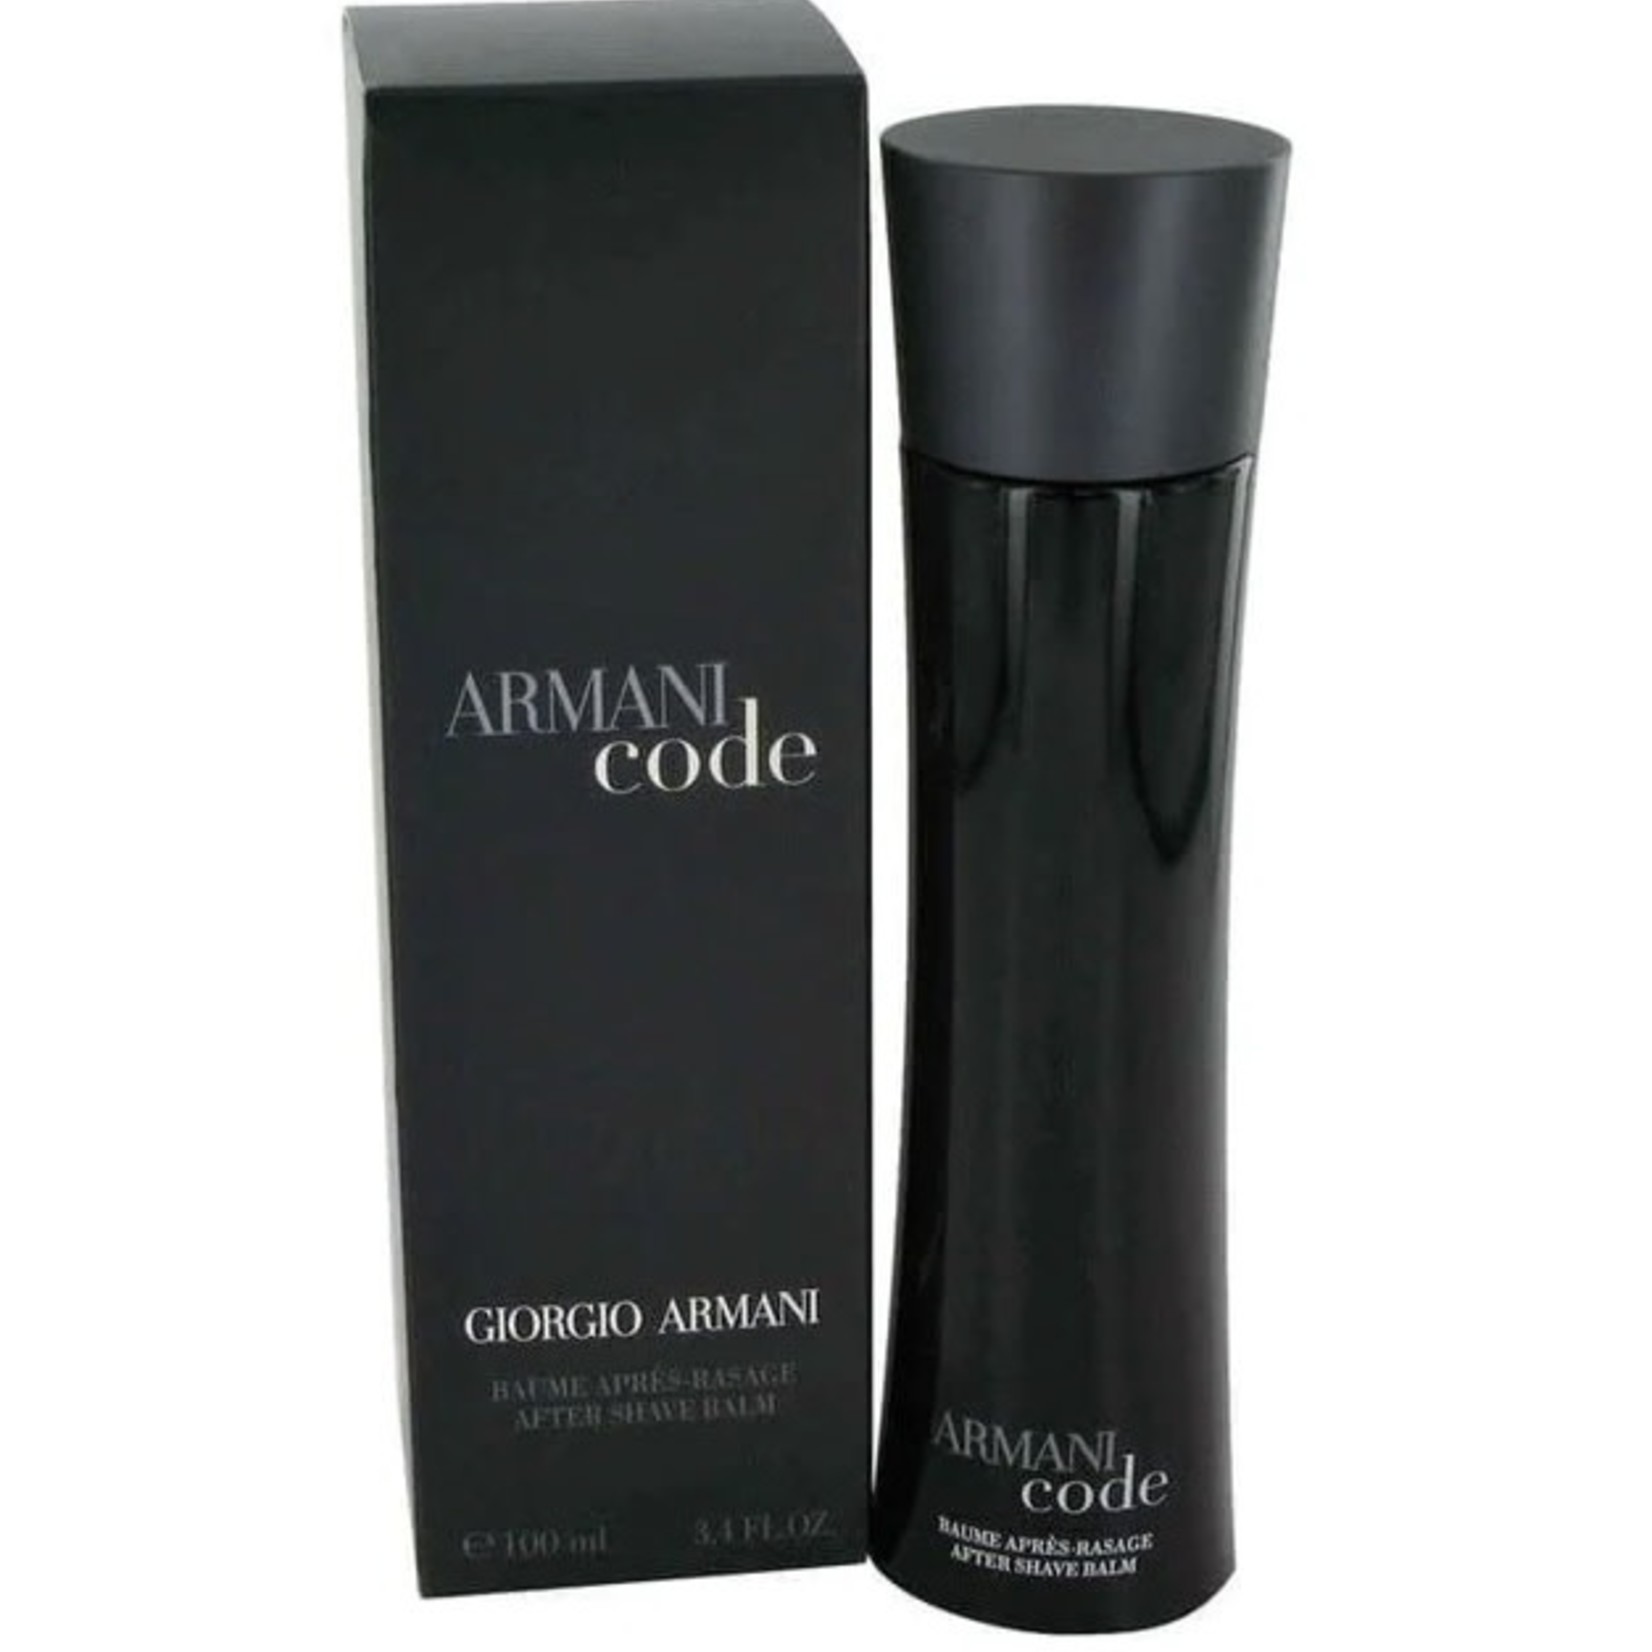 Giorgio Armani Armani Code After Shave Balm